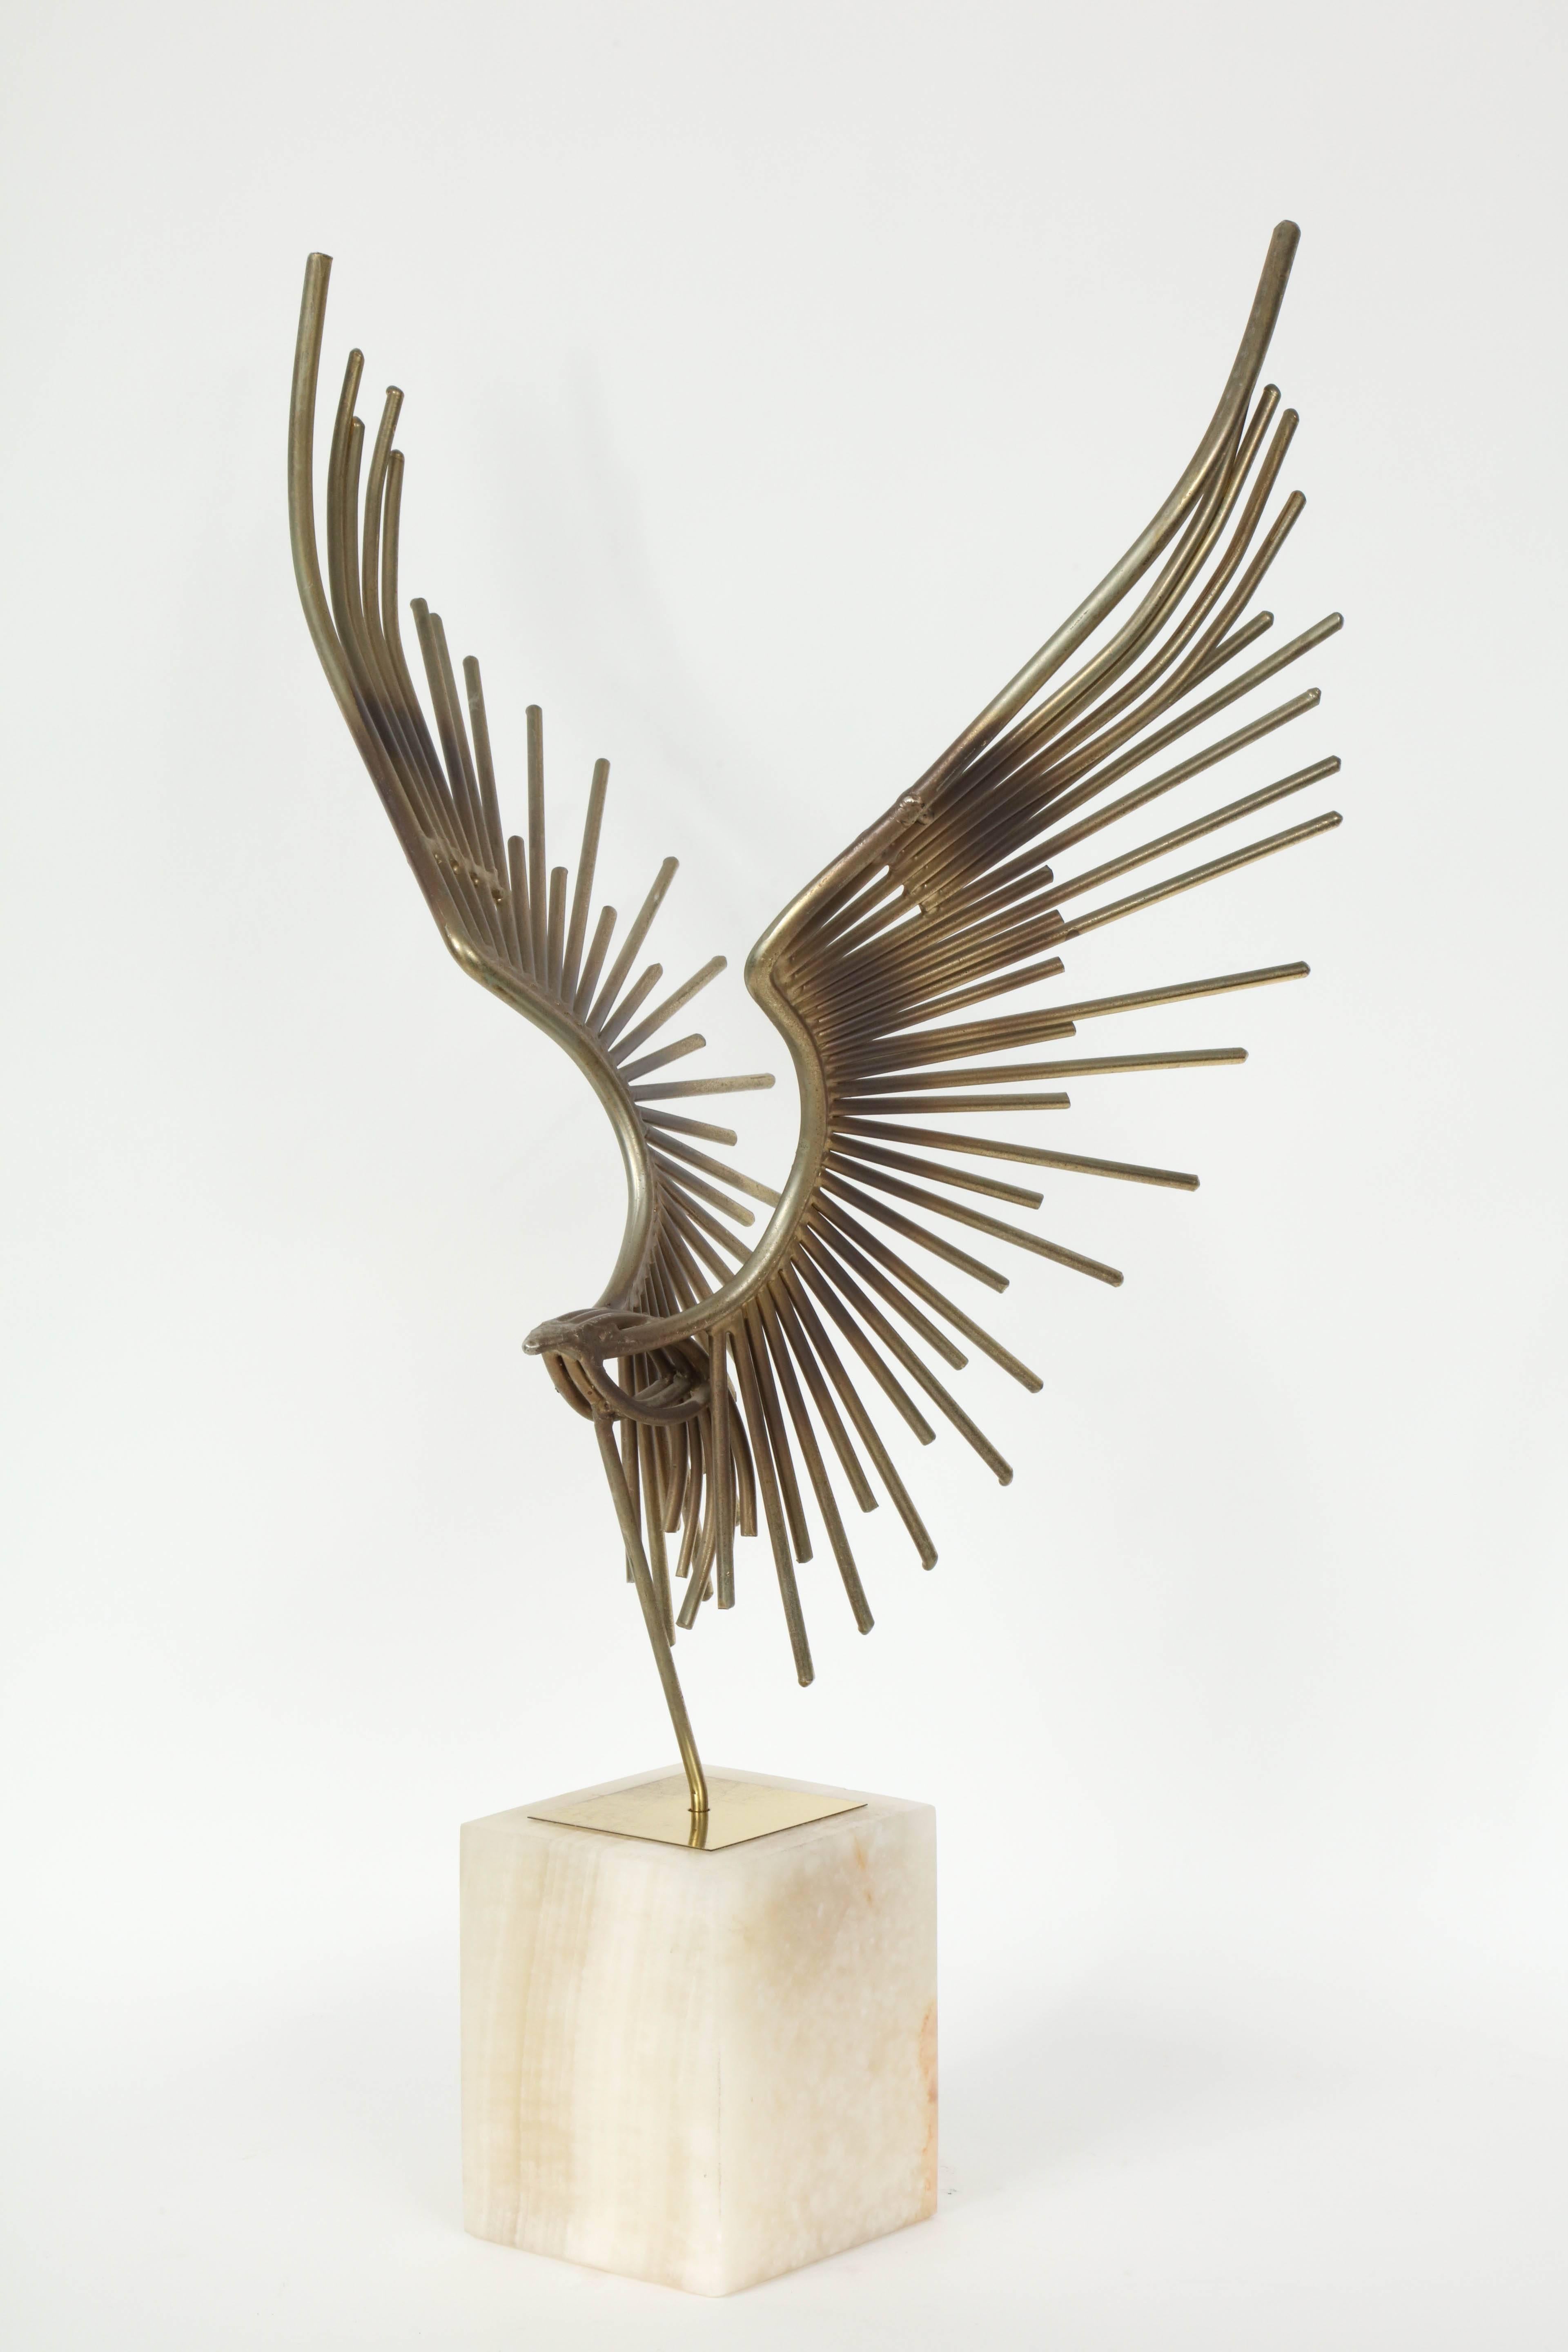 curtis jere bird sculpture